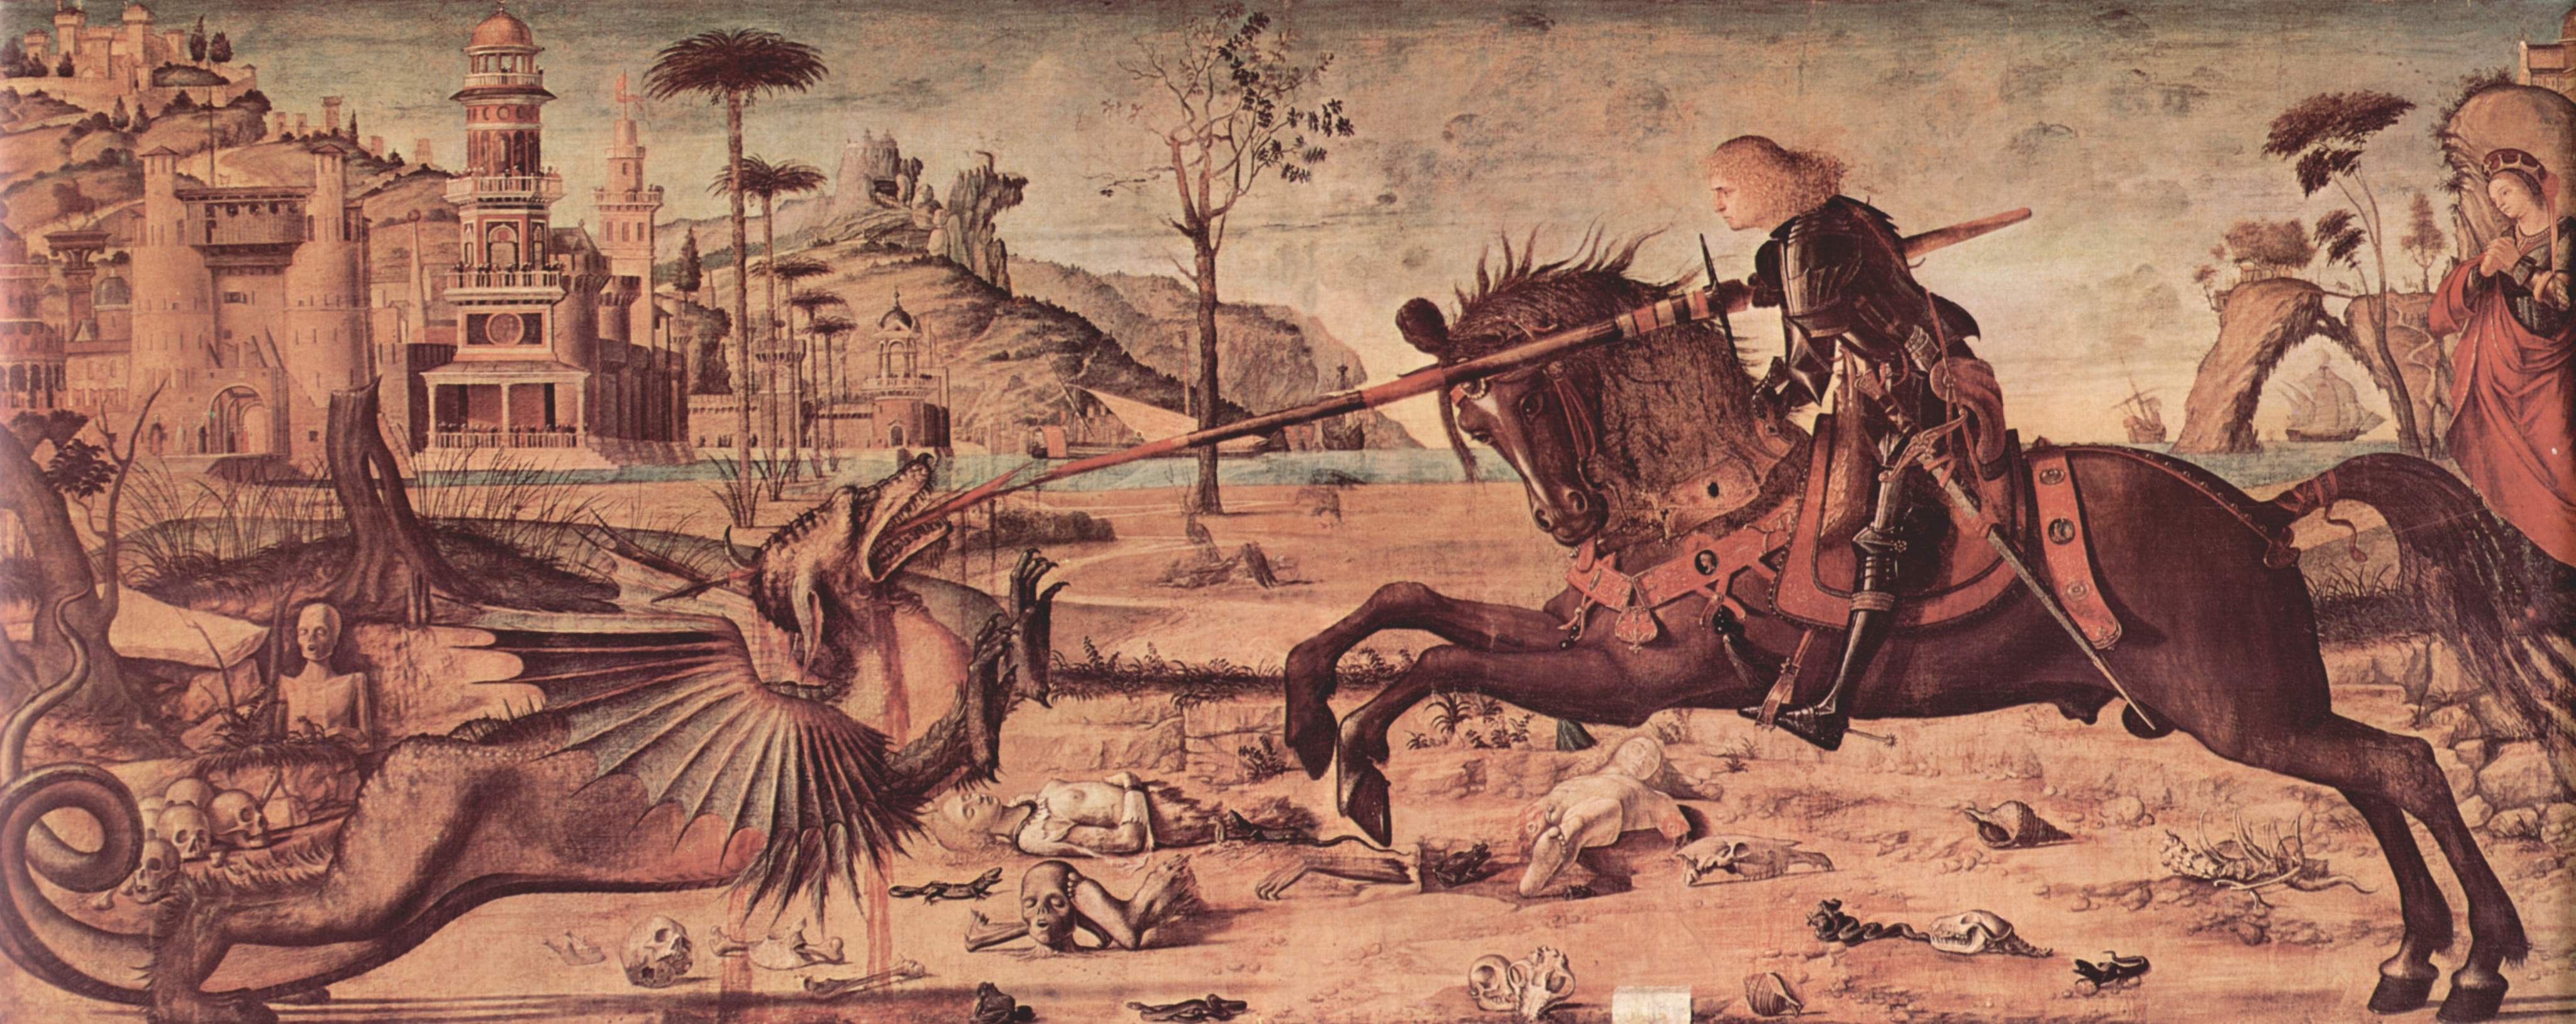 San Jorge y el Dragón by Vittore Carpaccio - 1502 - 141 x 360 cm Escuela de San Giorgio degli Schiavoni